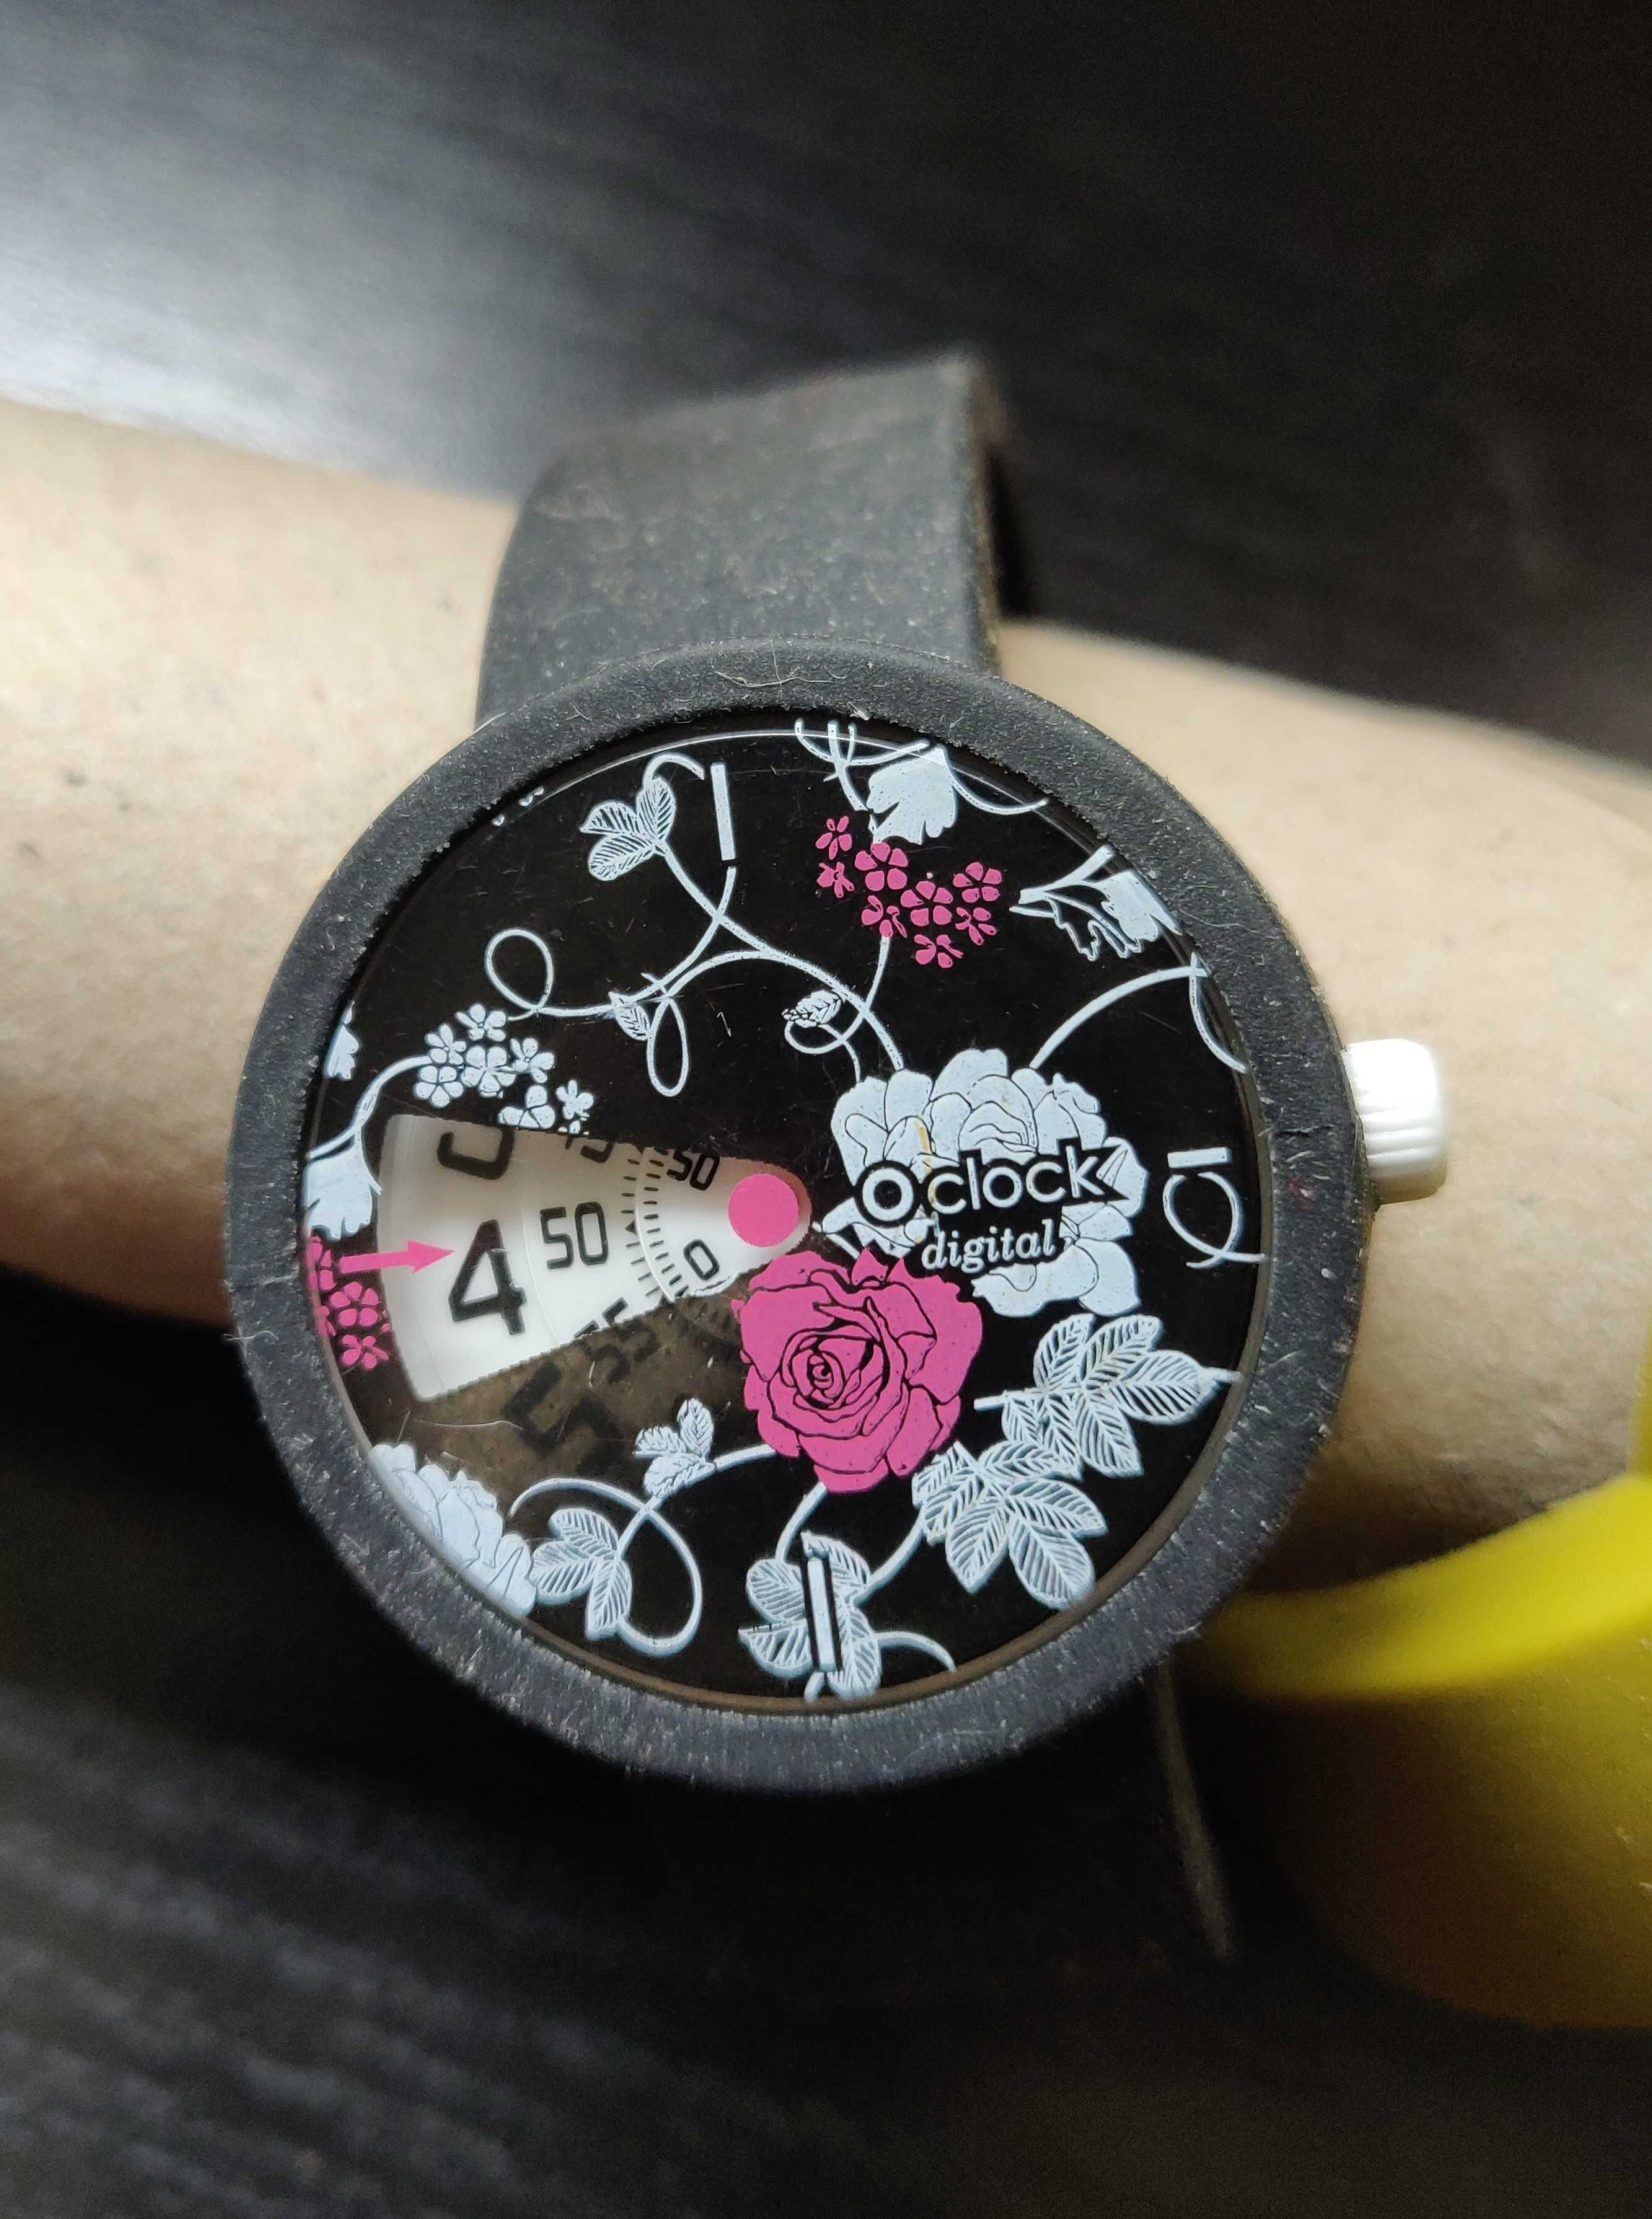 Relógio O'clock dogital, com desenho de rosas